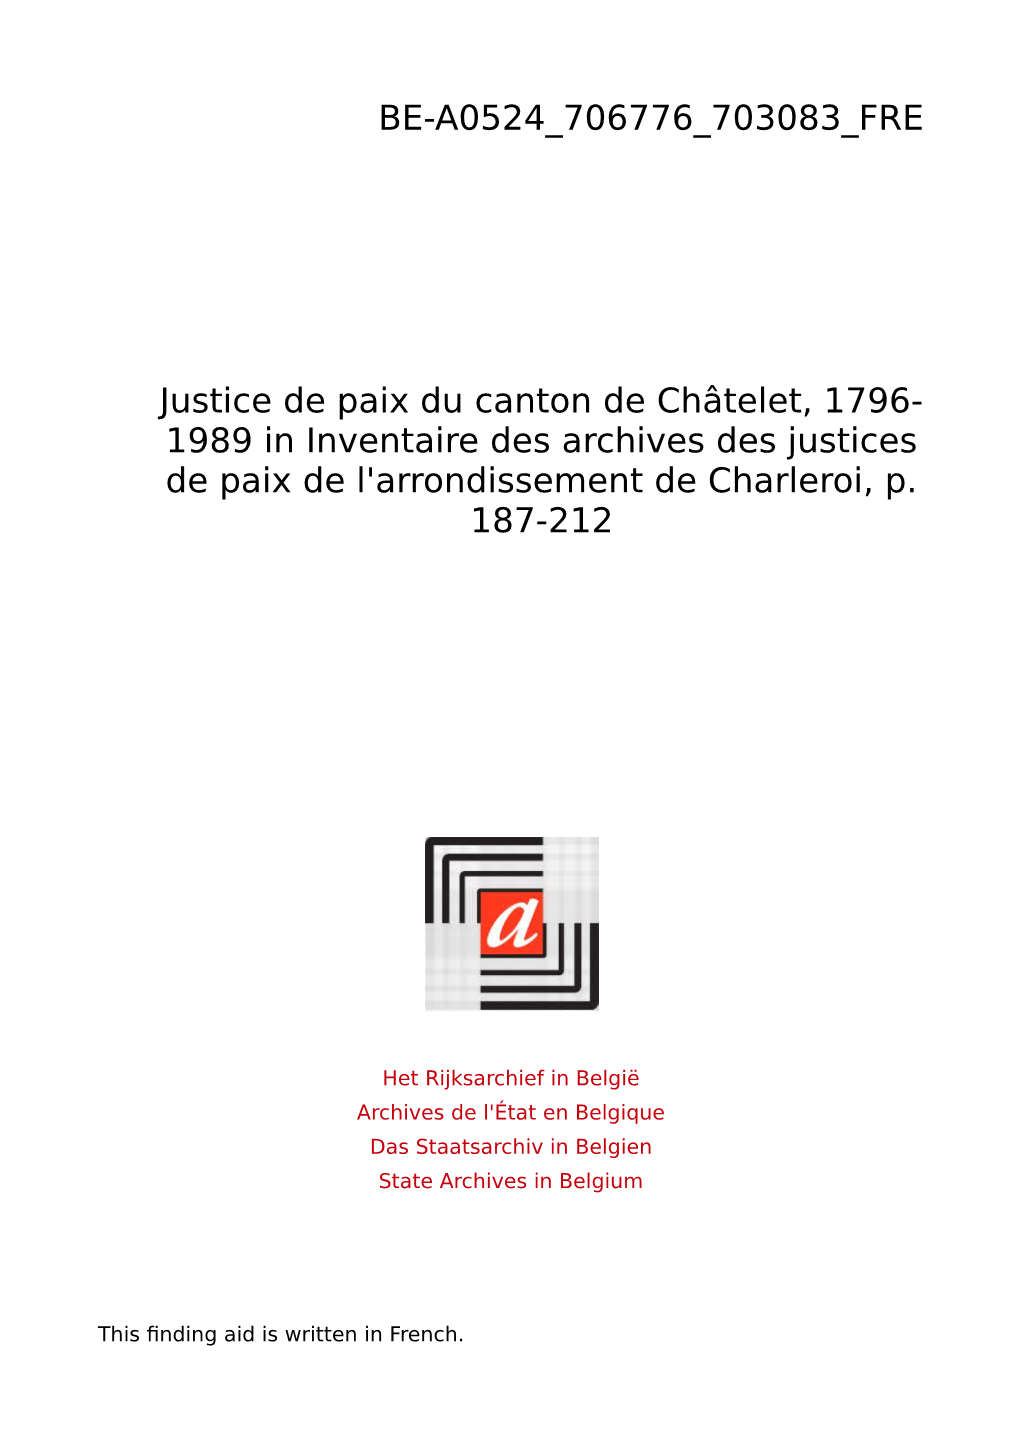 Justice De Paix Châtelet